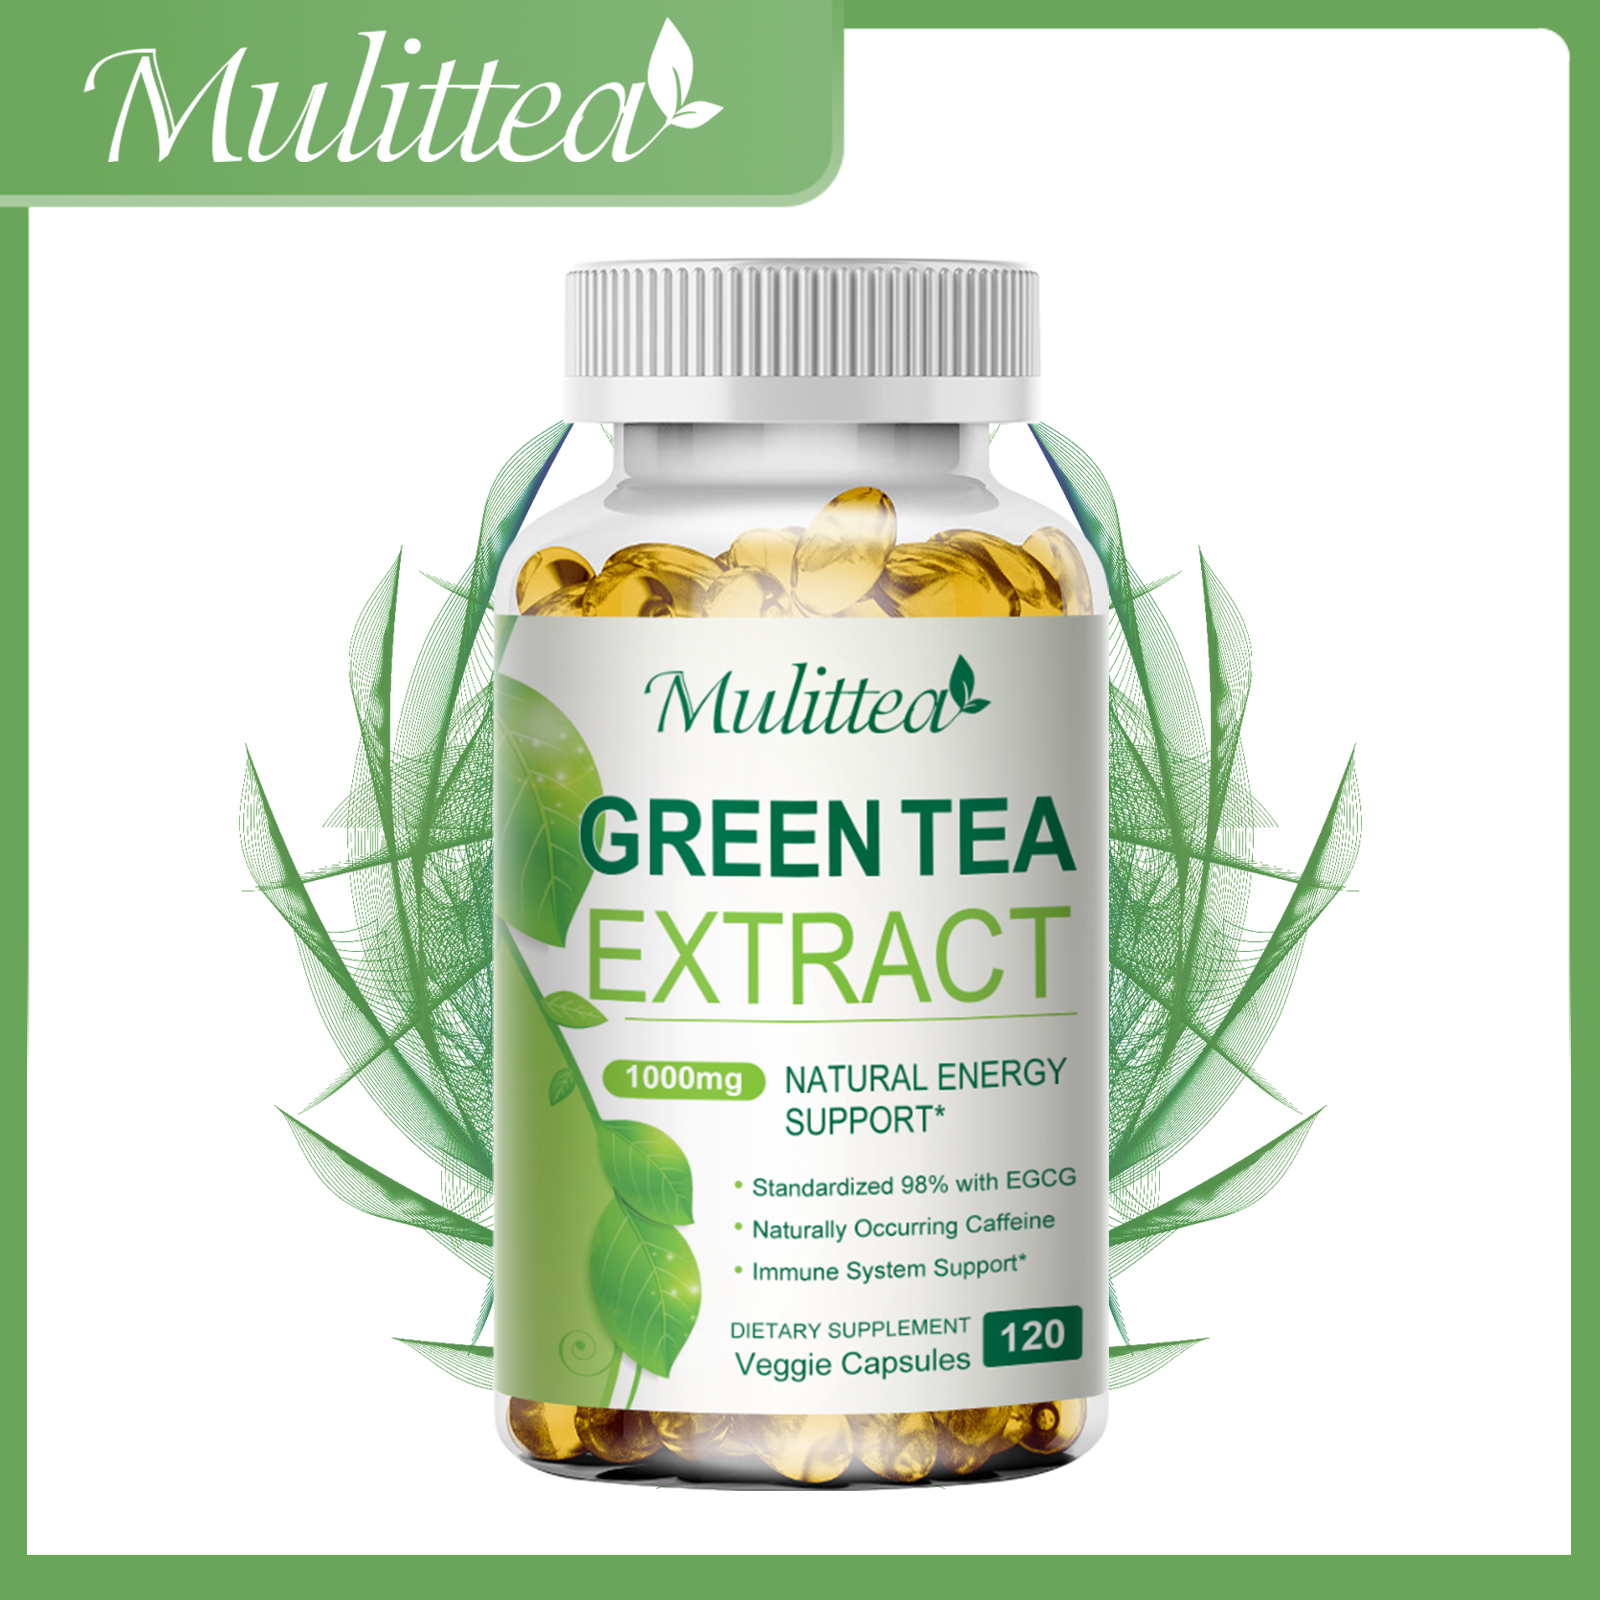 Mulittea Green Tea Extract Fat Burner Supplement with EGCG